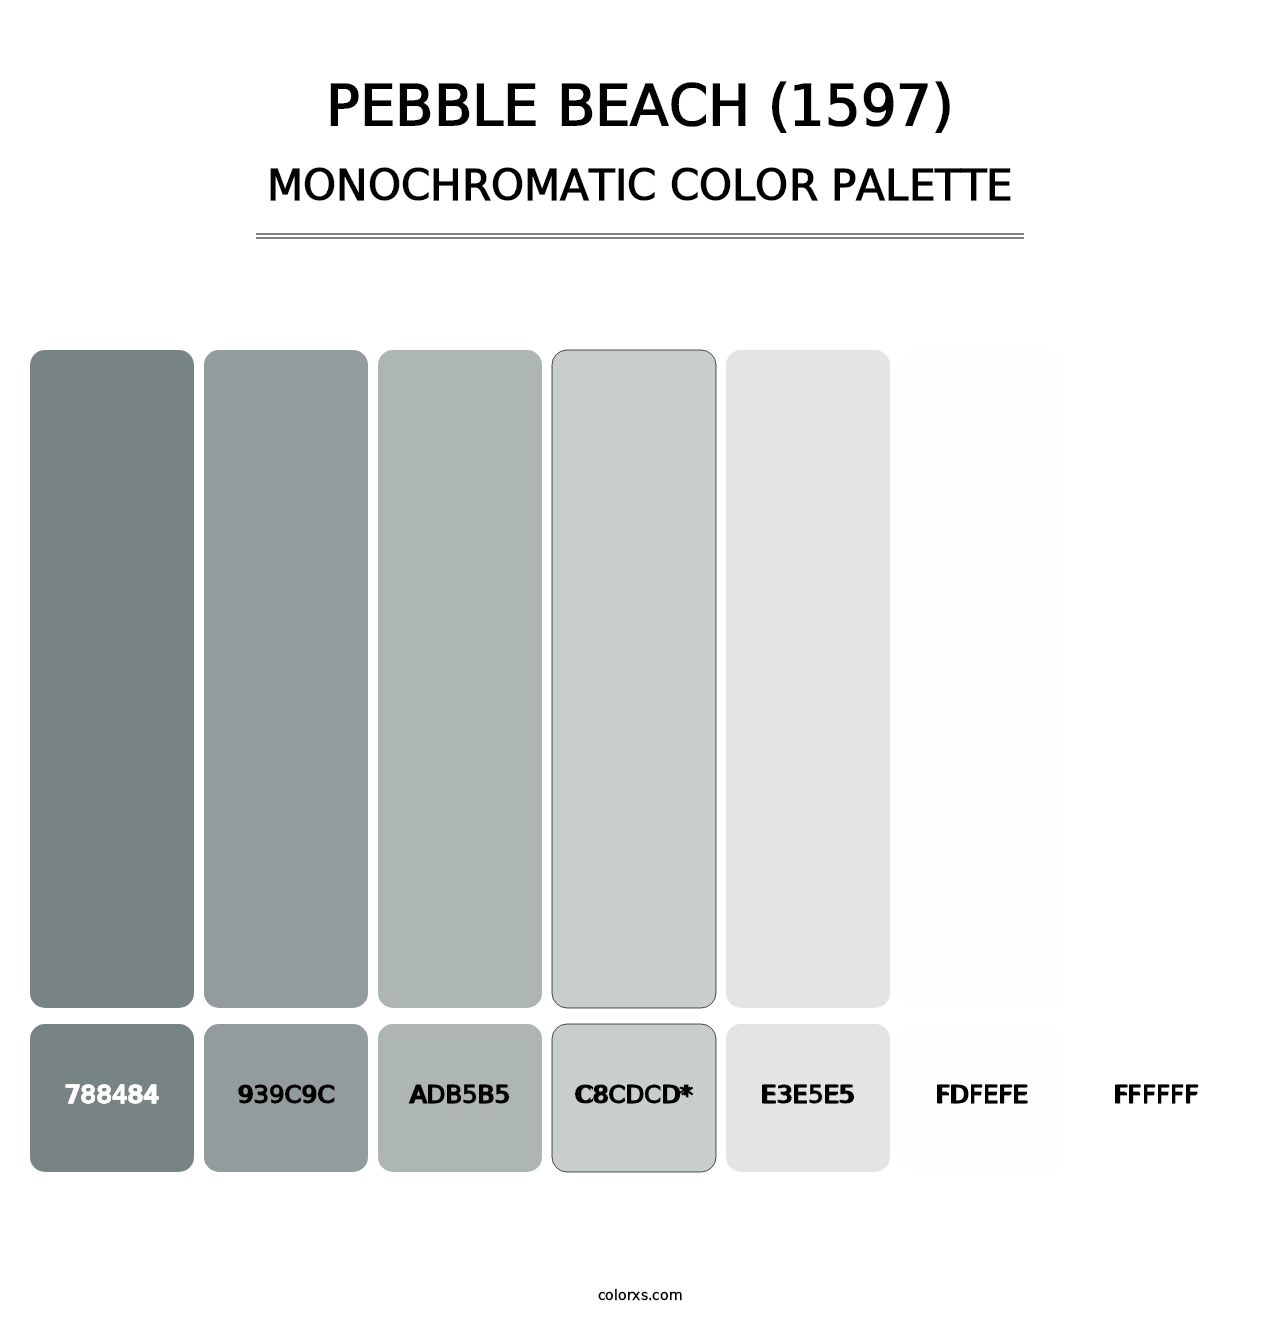 Pebble Beach (1597) - Monochromatic Color Palette